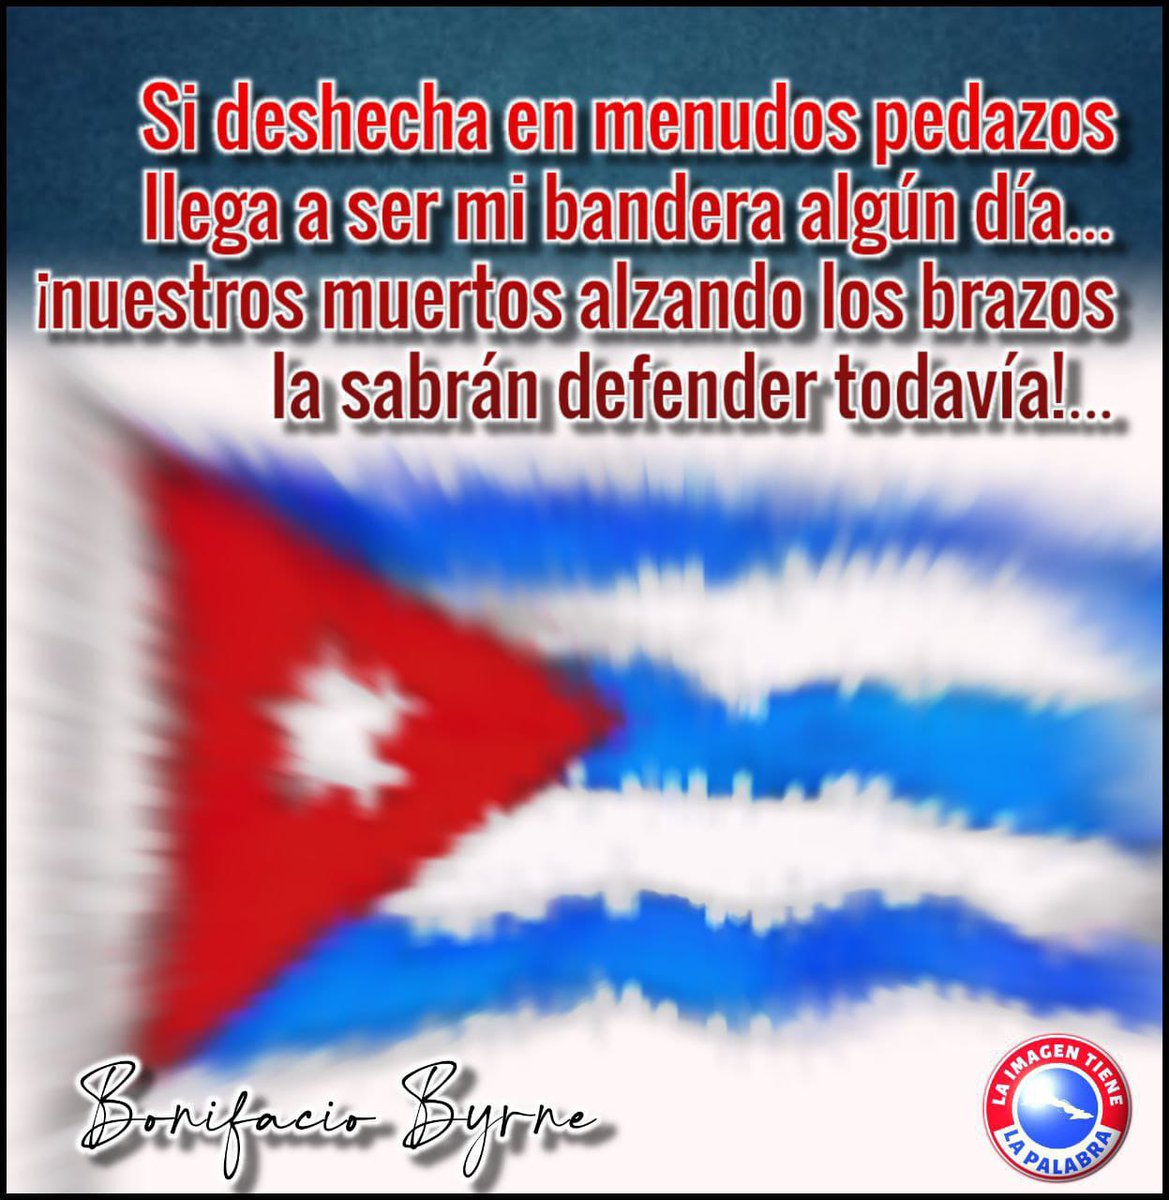 Se cumplen hoy 125 años de la publicación de 'Mi bandera'. El poema de Bonifacio Byrne que nos inspira a preservar la independencia y la soberanía de #Cuba 🇨🇺 hasta las últimas consecuencias. #LatirAvileño #CubaViveEnSuHistoria @DiazCanelB